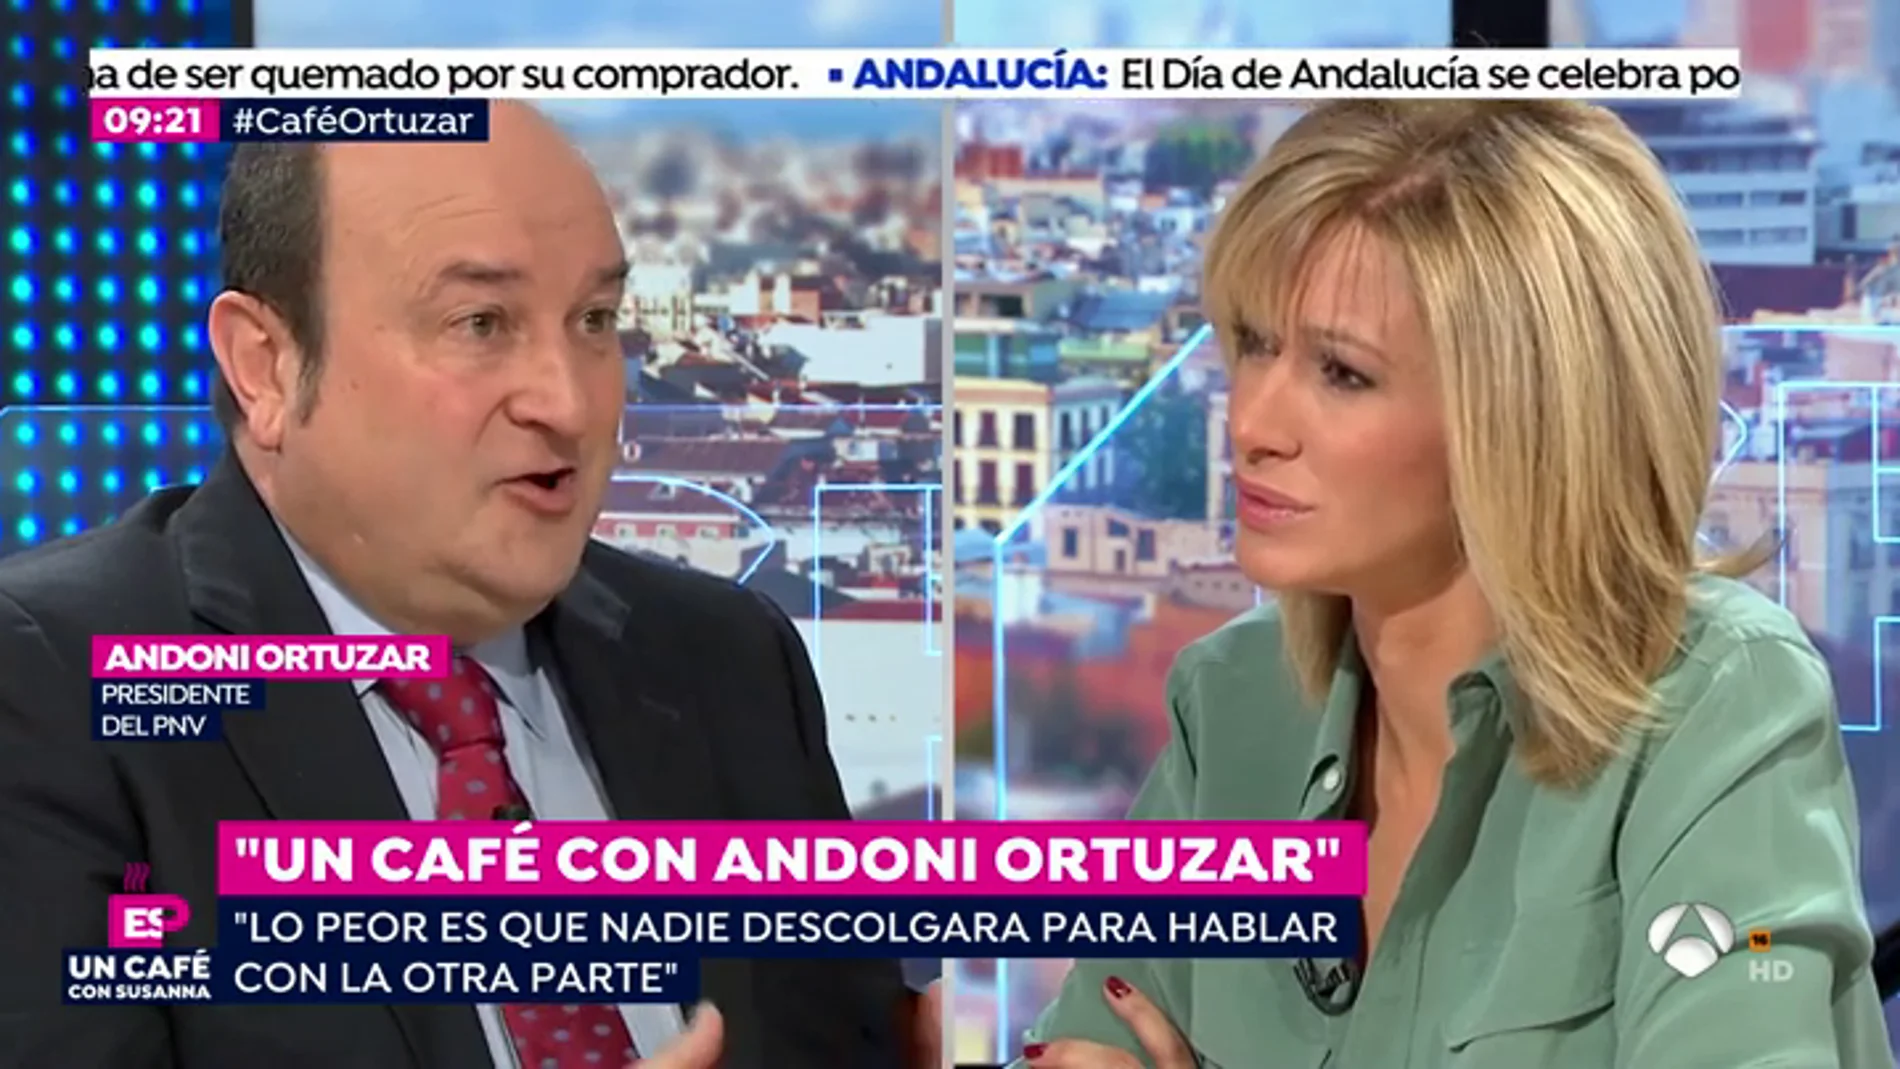   Andoni Ortuzar: "Sería injusto decir que Puigdemont huyó para evitar la cárcel"